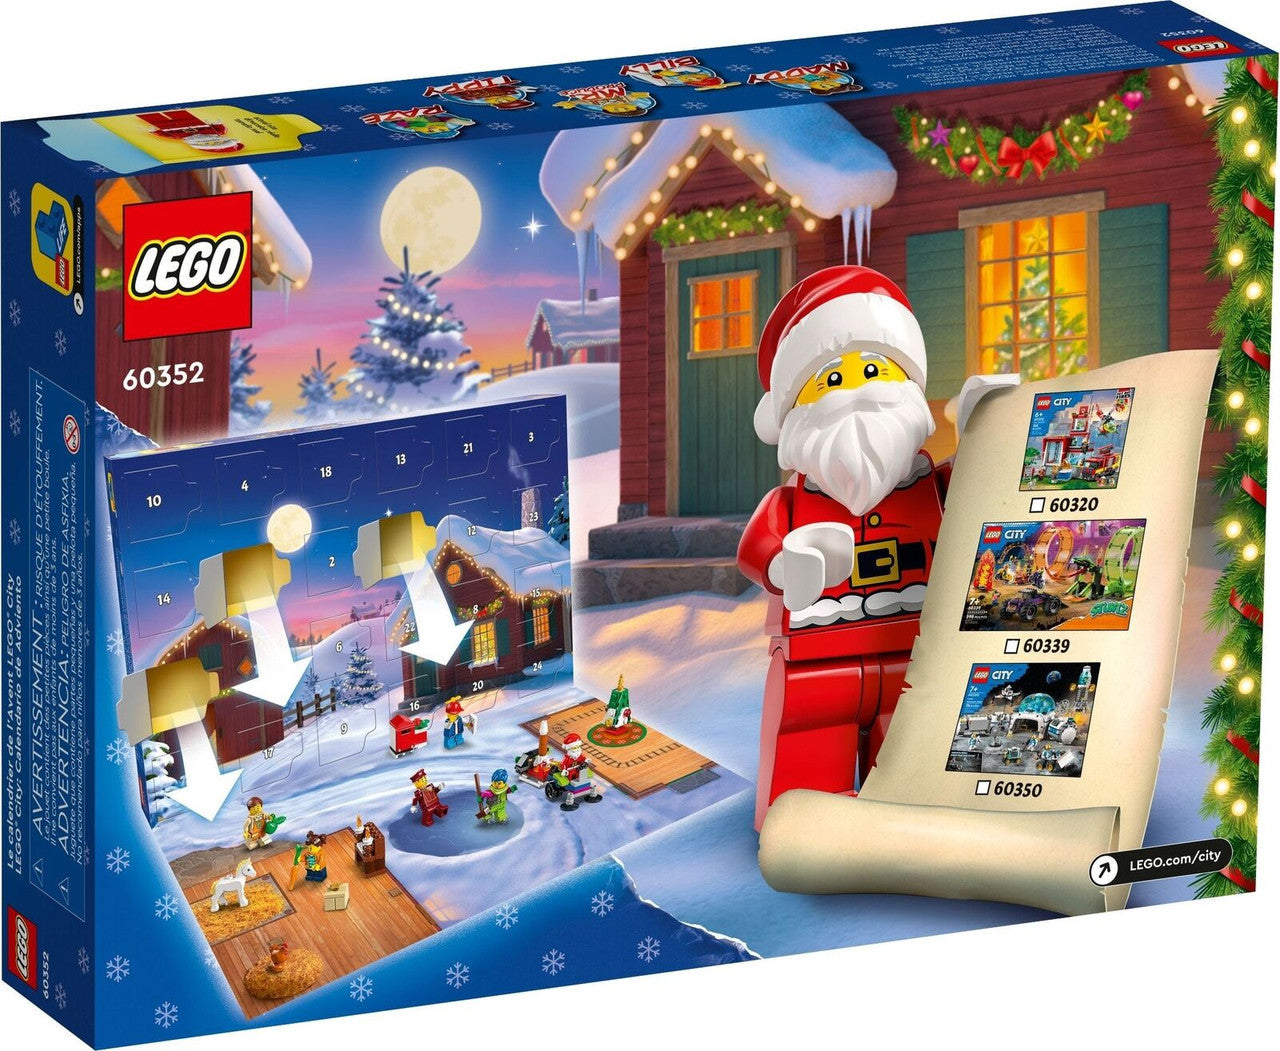 LEGO City Advent Calendar 2022 - 60352